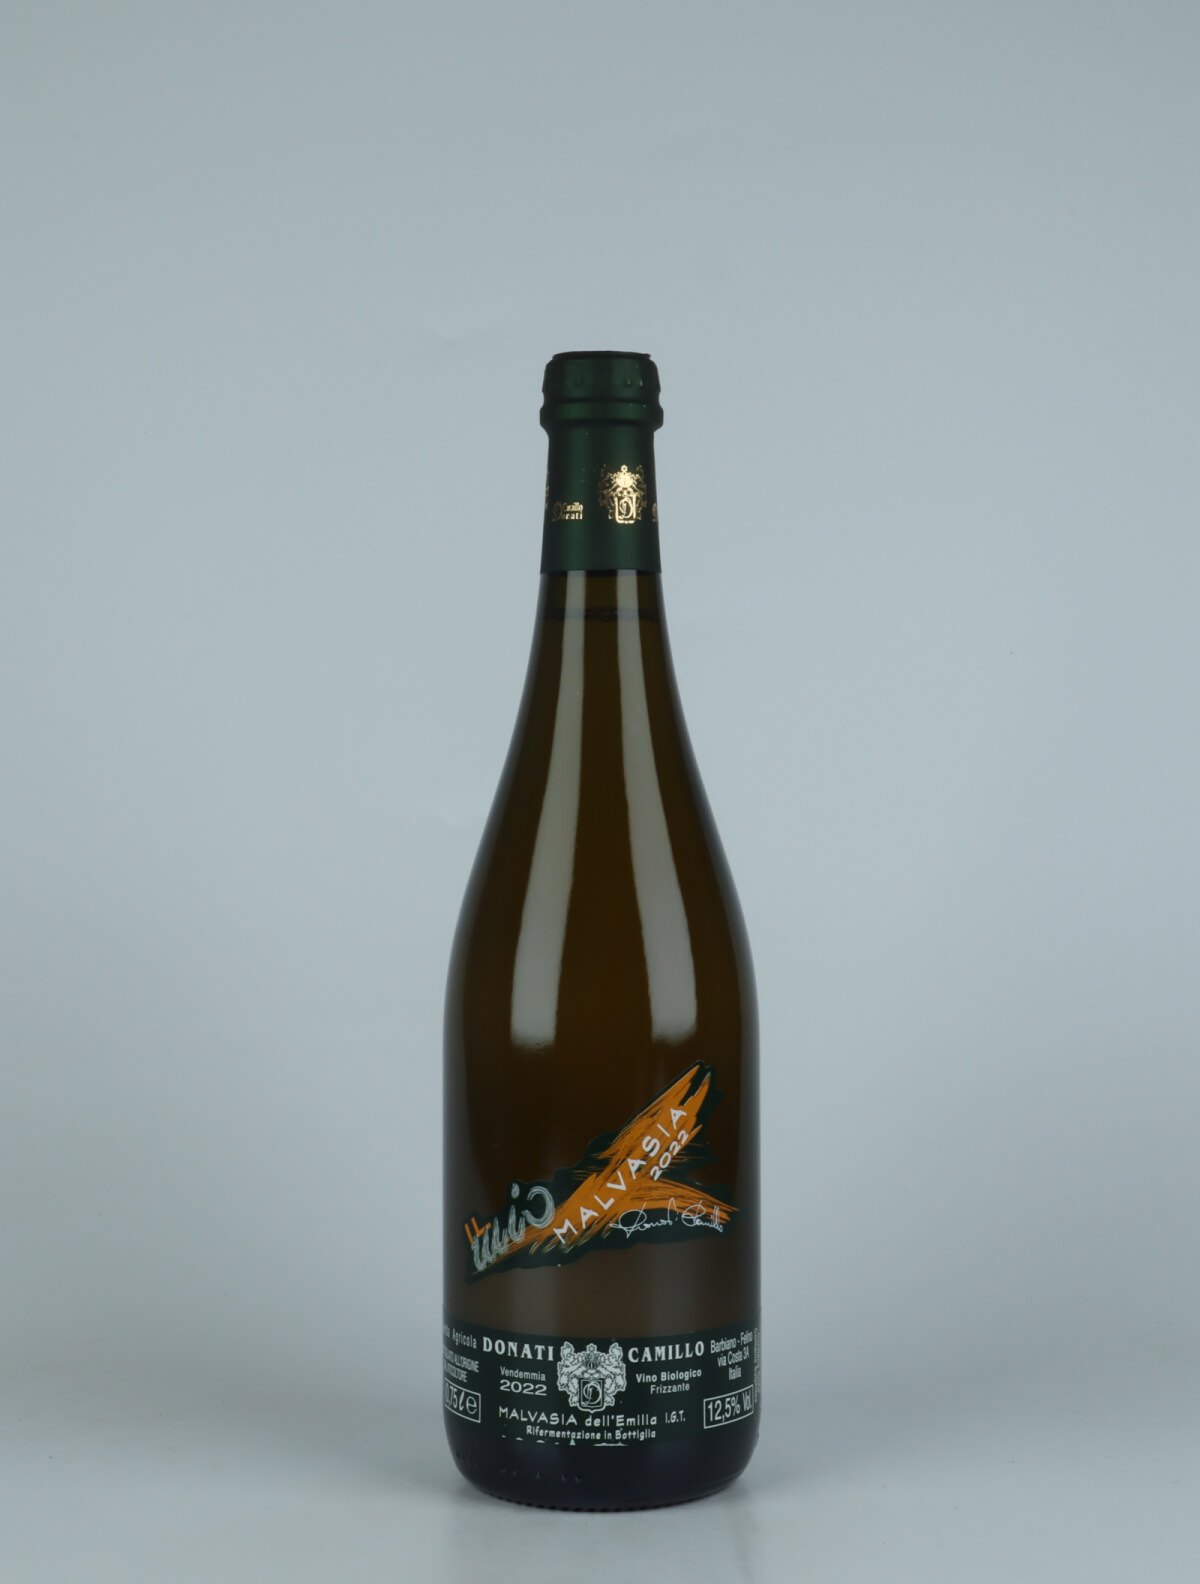 A bottle 2022 Malvasia Frizzante Sparkling from Camillo Donati, Emilia-Romagna in Italy